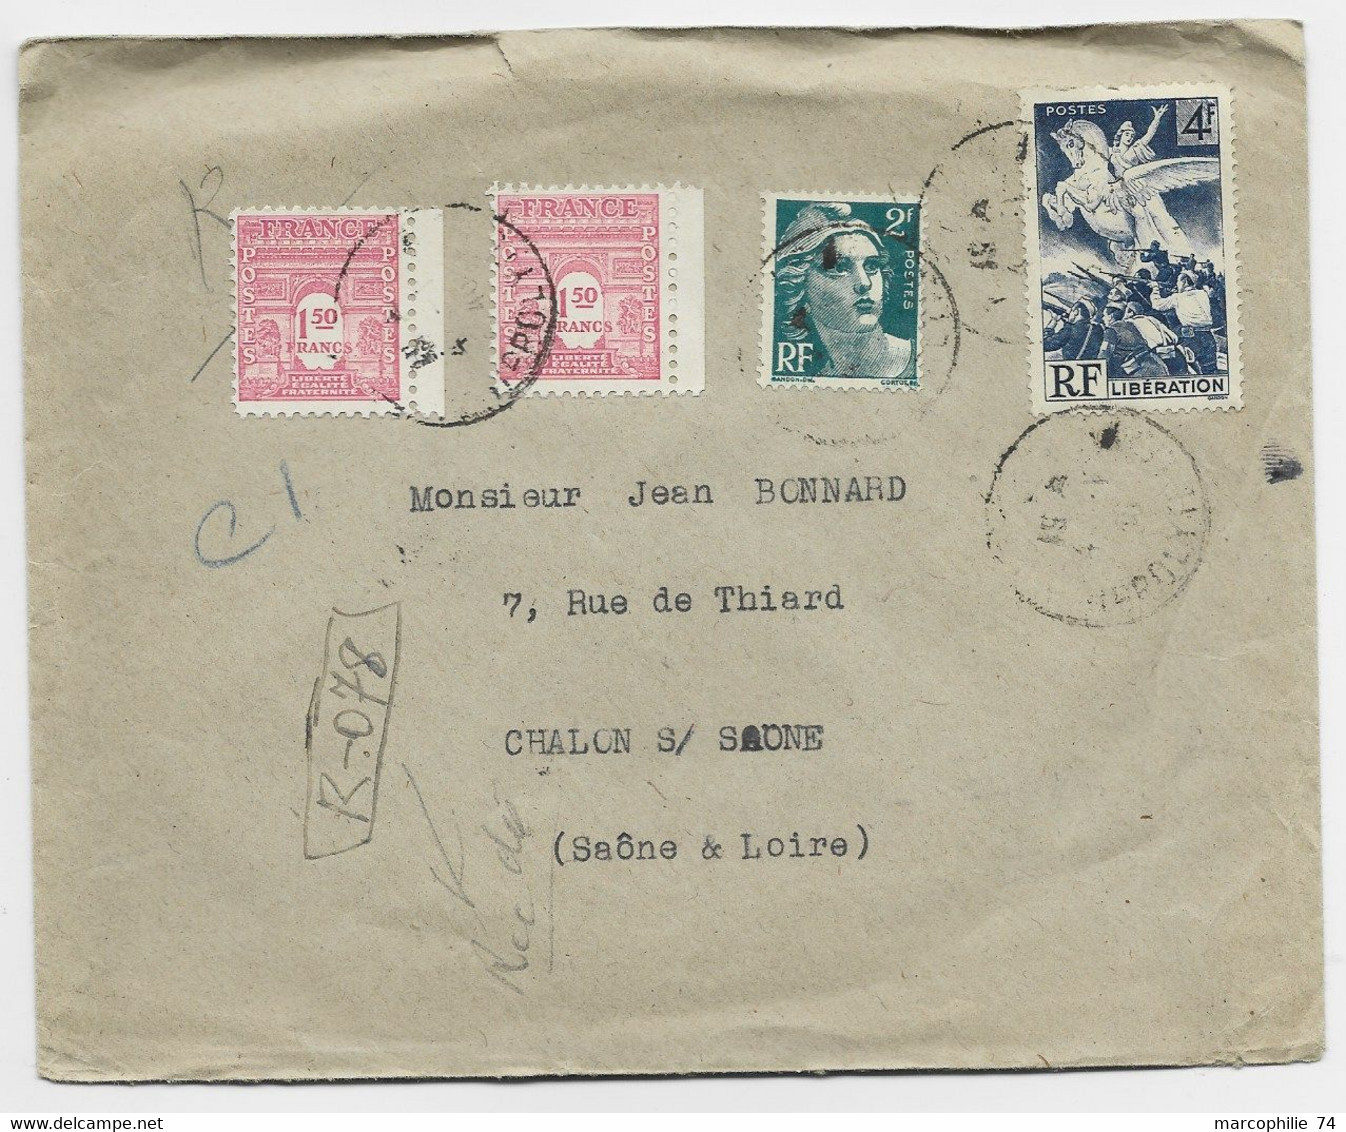 FRANCE ARC TRIOMPHE 1FR50 ROSEX2+ GANDON 2FR+ 4FR LIBERATION LETTRE REC PROVISOIRE PARIS 1946 AU TARIF - 1944-45 Arc De Triomphe